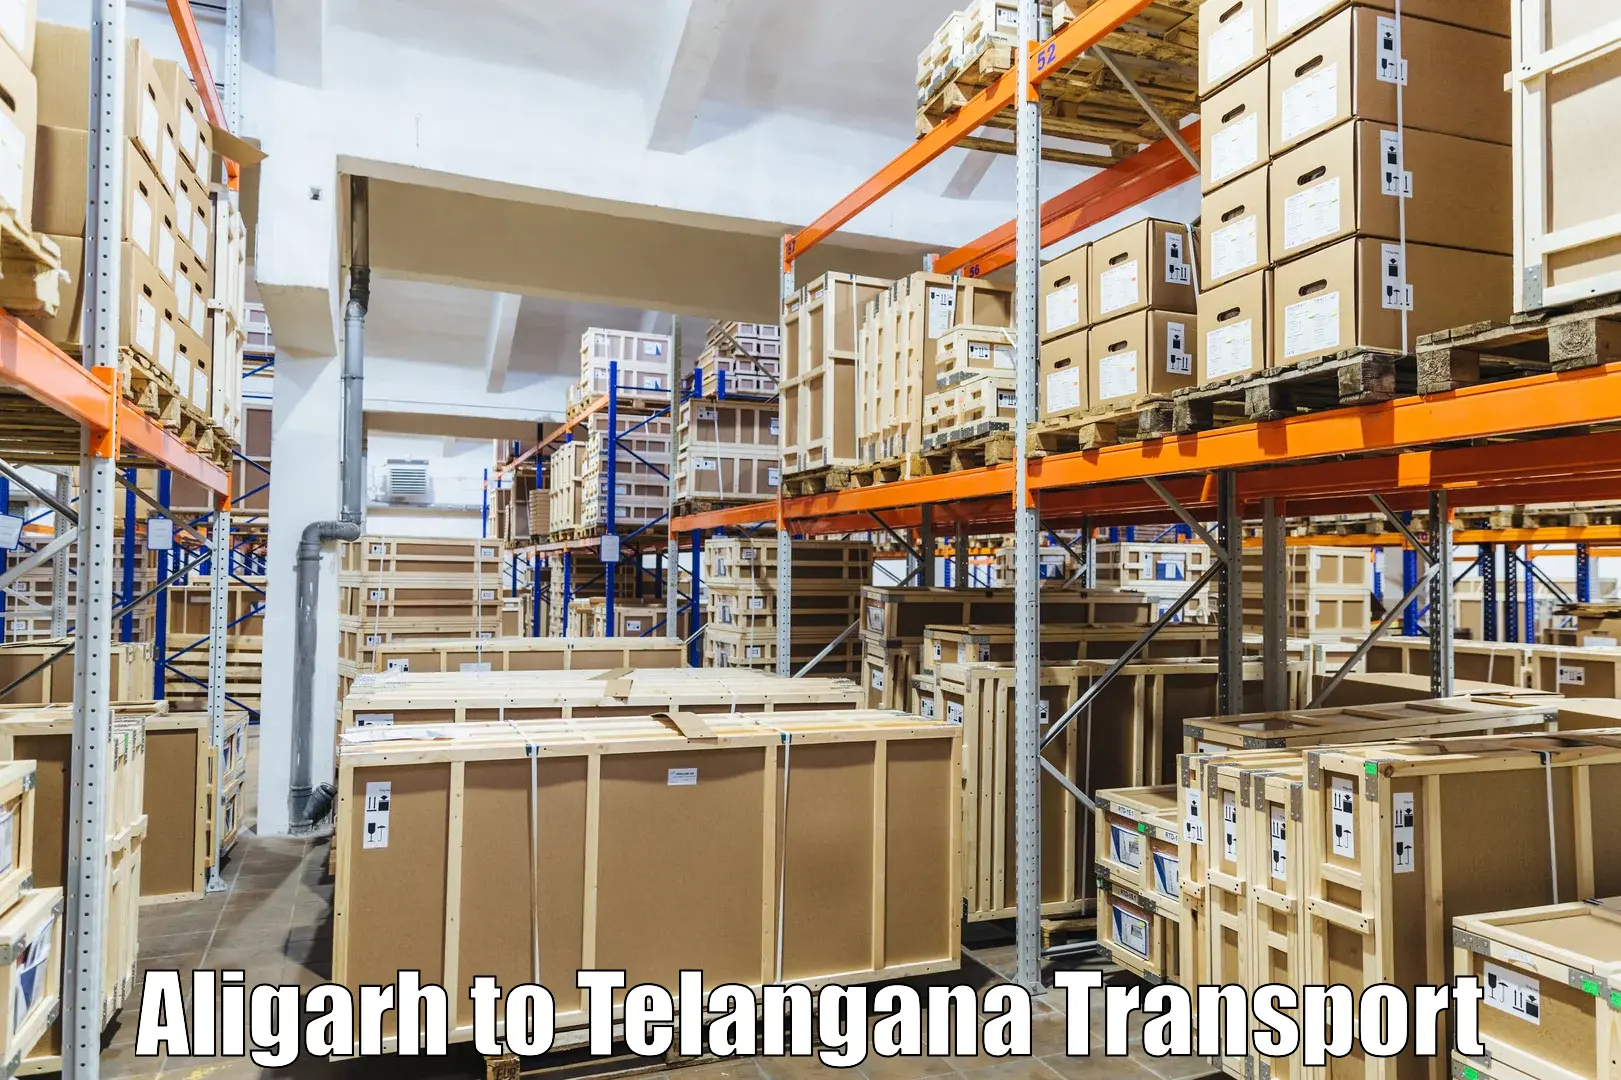 International cargo transportation services Aligarh to Kollapur